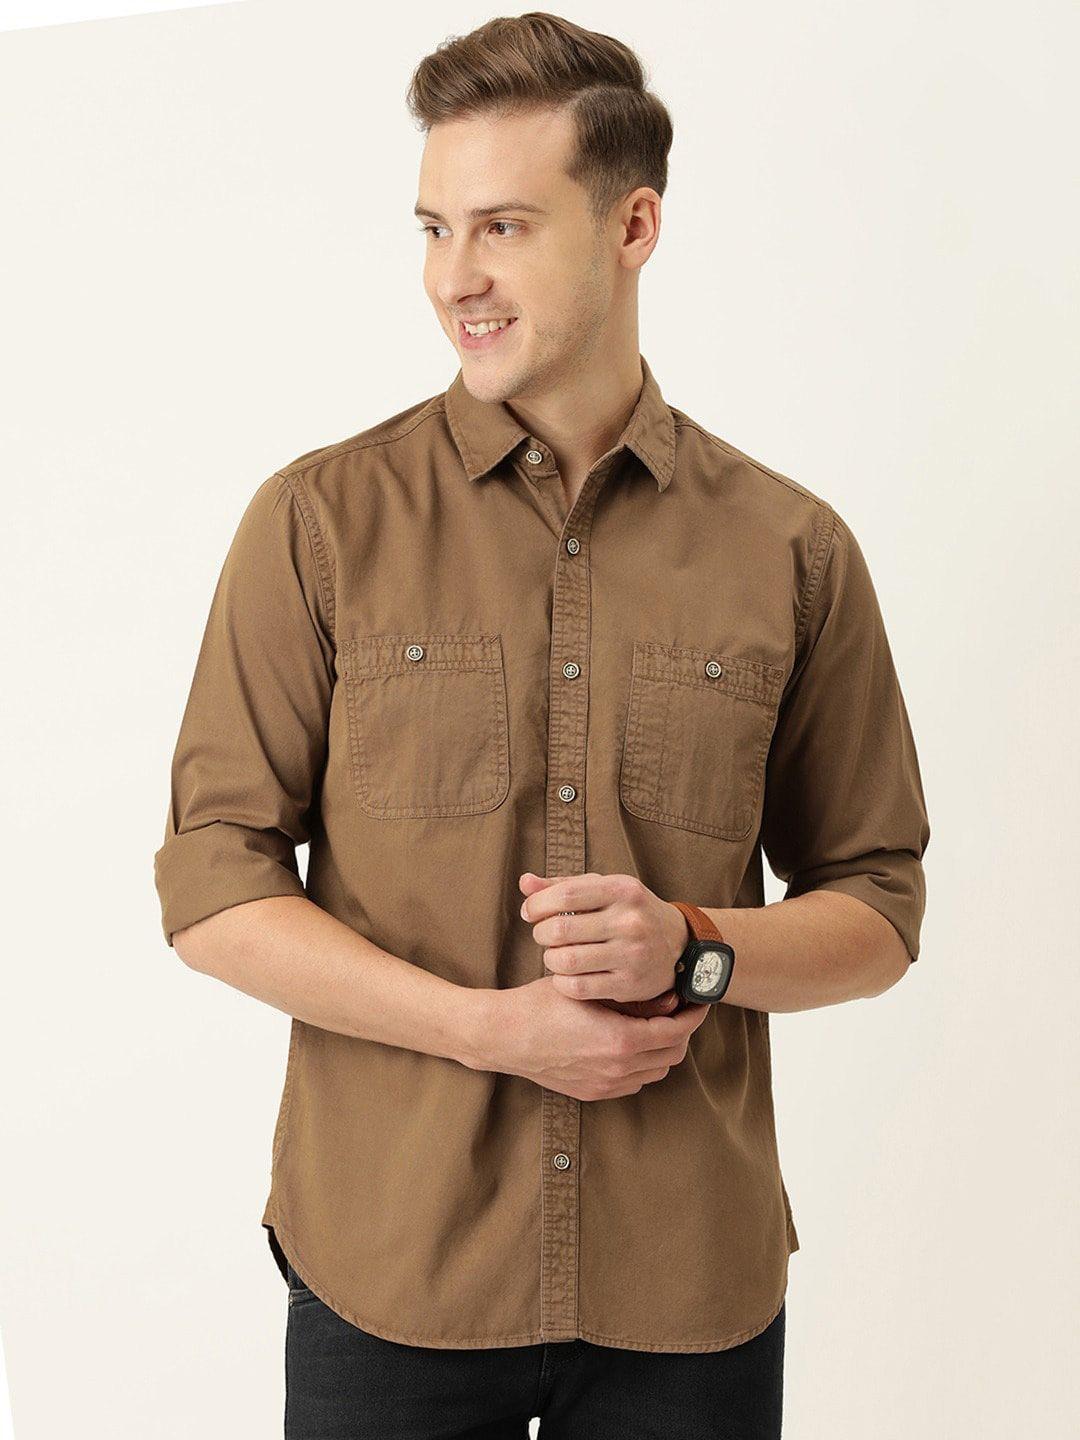 ivoc men standard casual cotton shirt